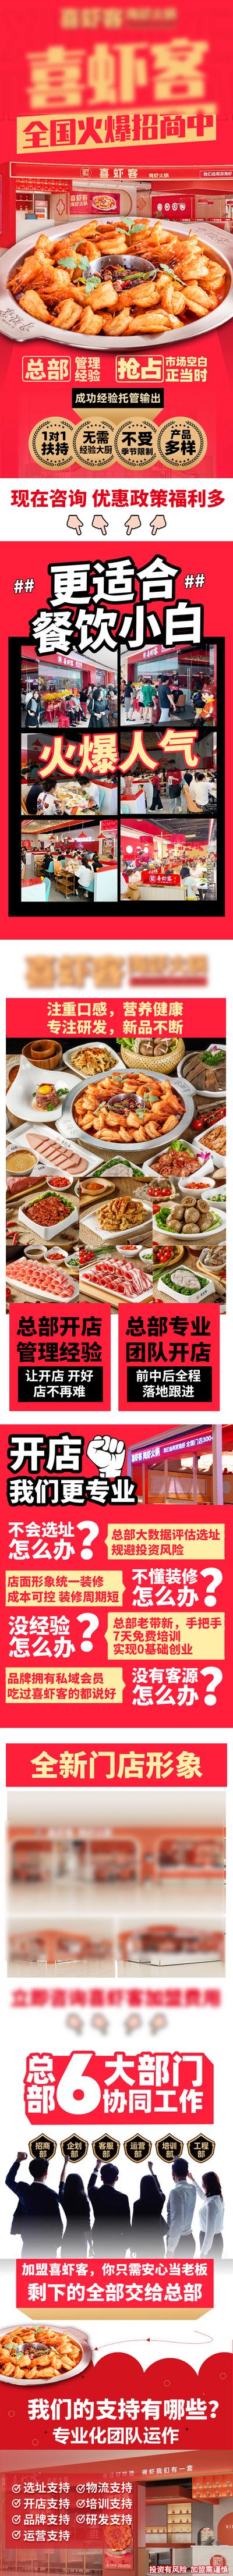 南门网 专题设计 美食 餐饮 虾 火锅 长图 招商 加盟